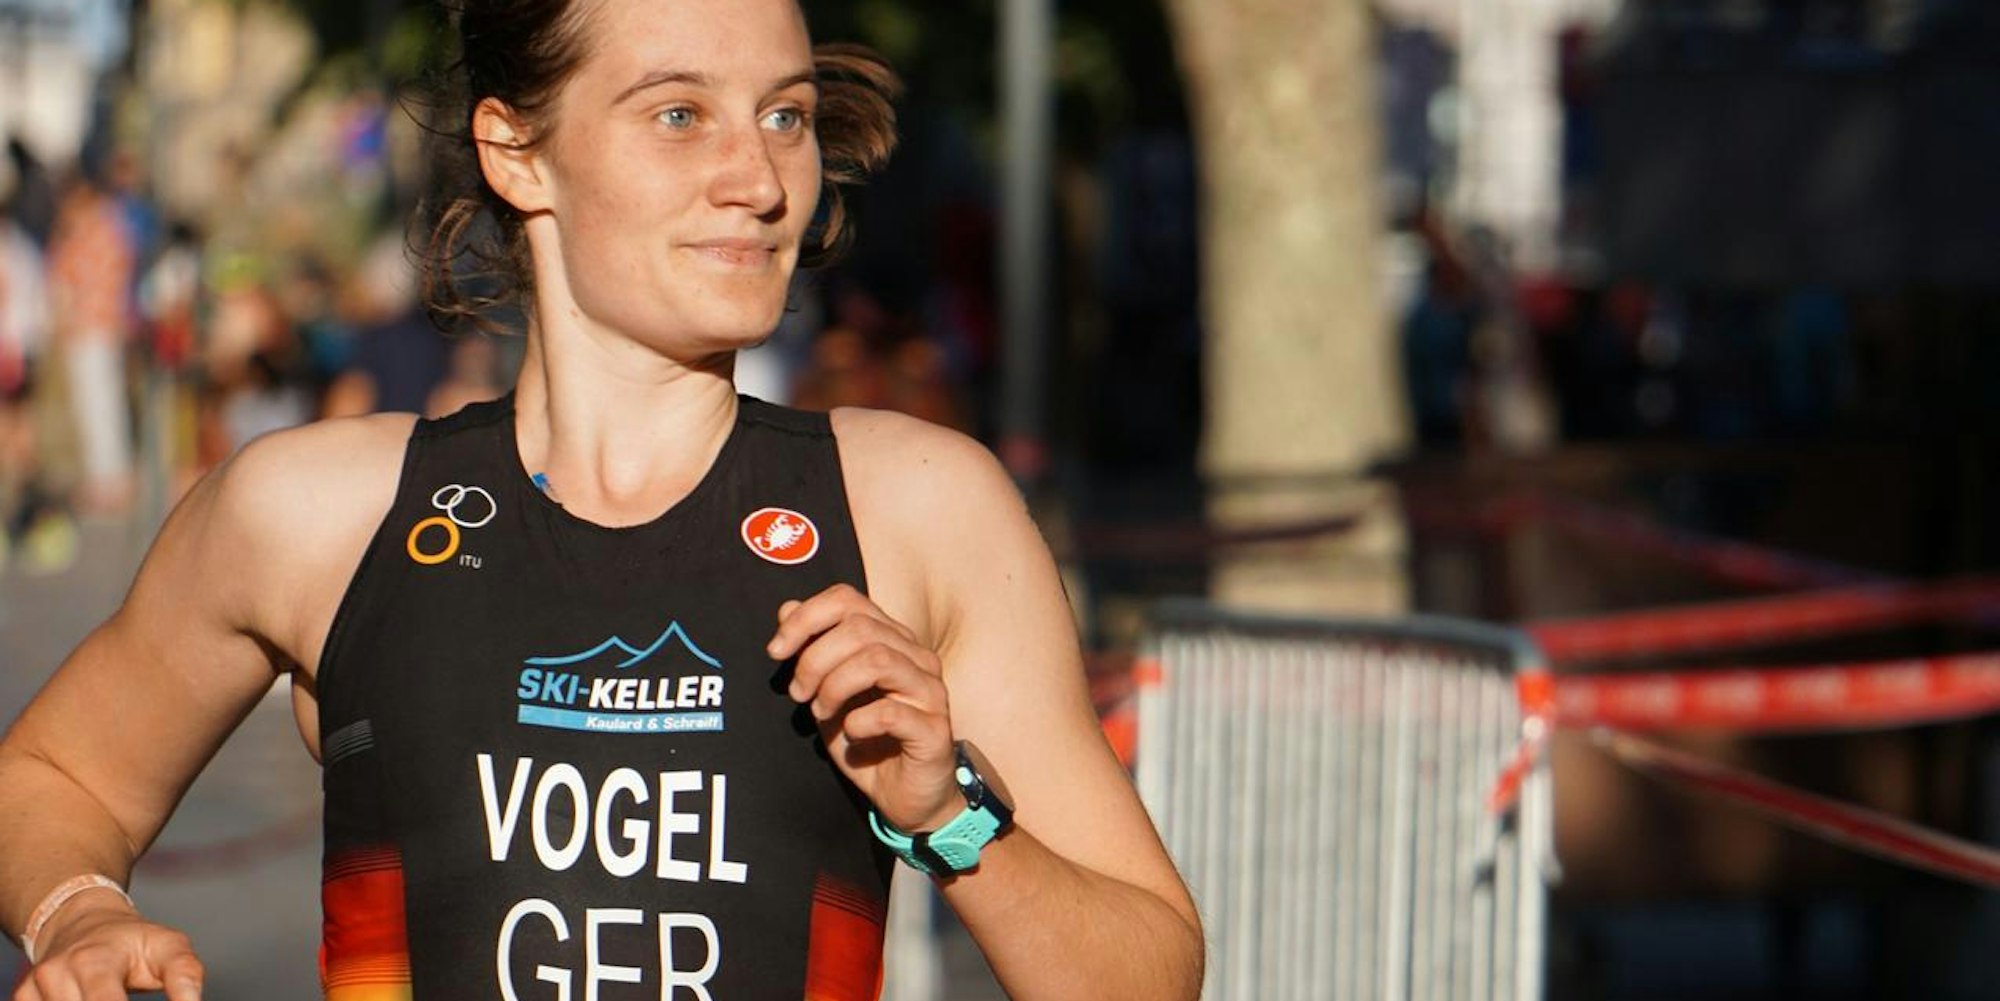 Doppelter Triumph: Milena Vogel gewann in zwei Wettbewerben.